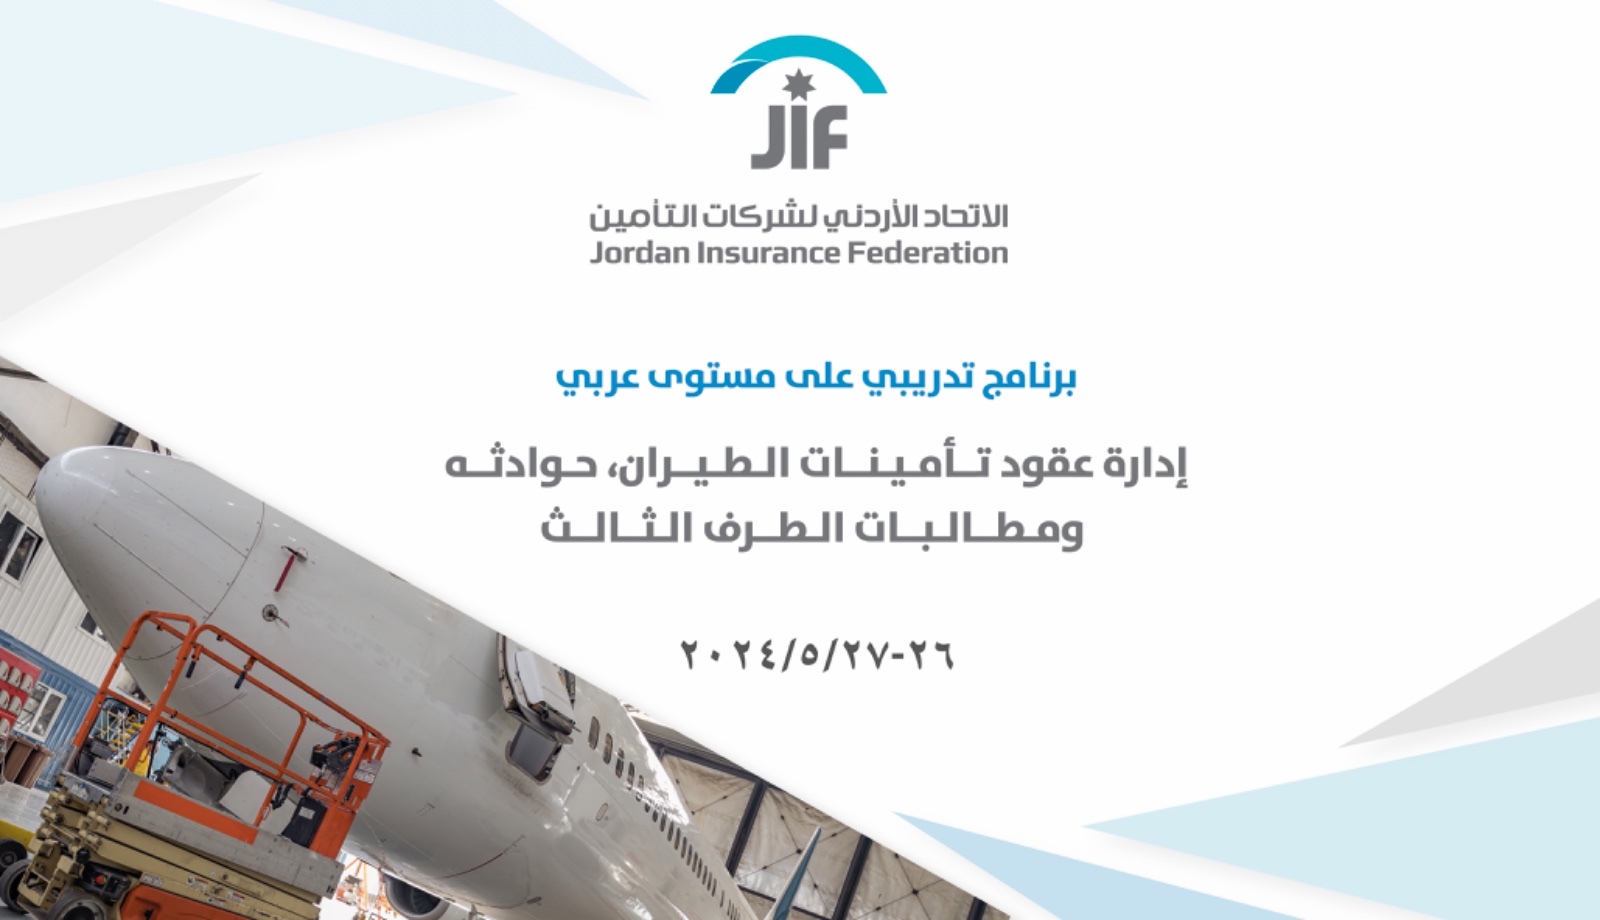 الاتحاد الأردني لشركات التأمين يعلن عن عقد البرنامج التدريبي الرابع المعنون:    إدارة عقود تأمينات الطيران، حوادثه ومطالبات الطرف الثالث